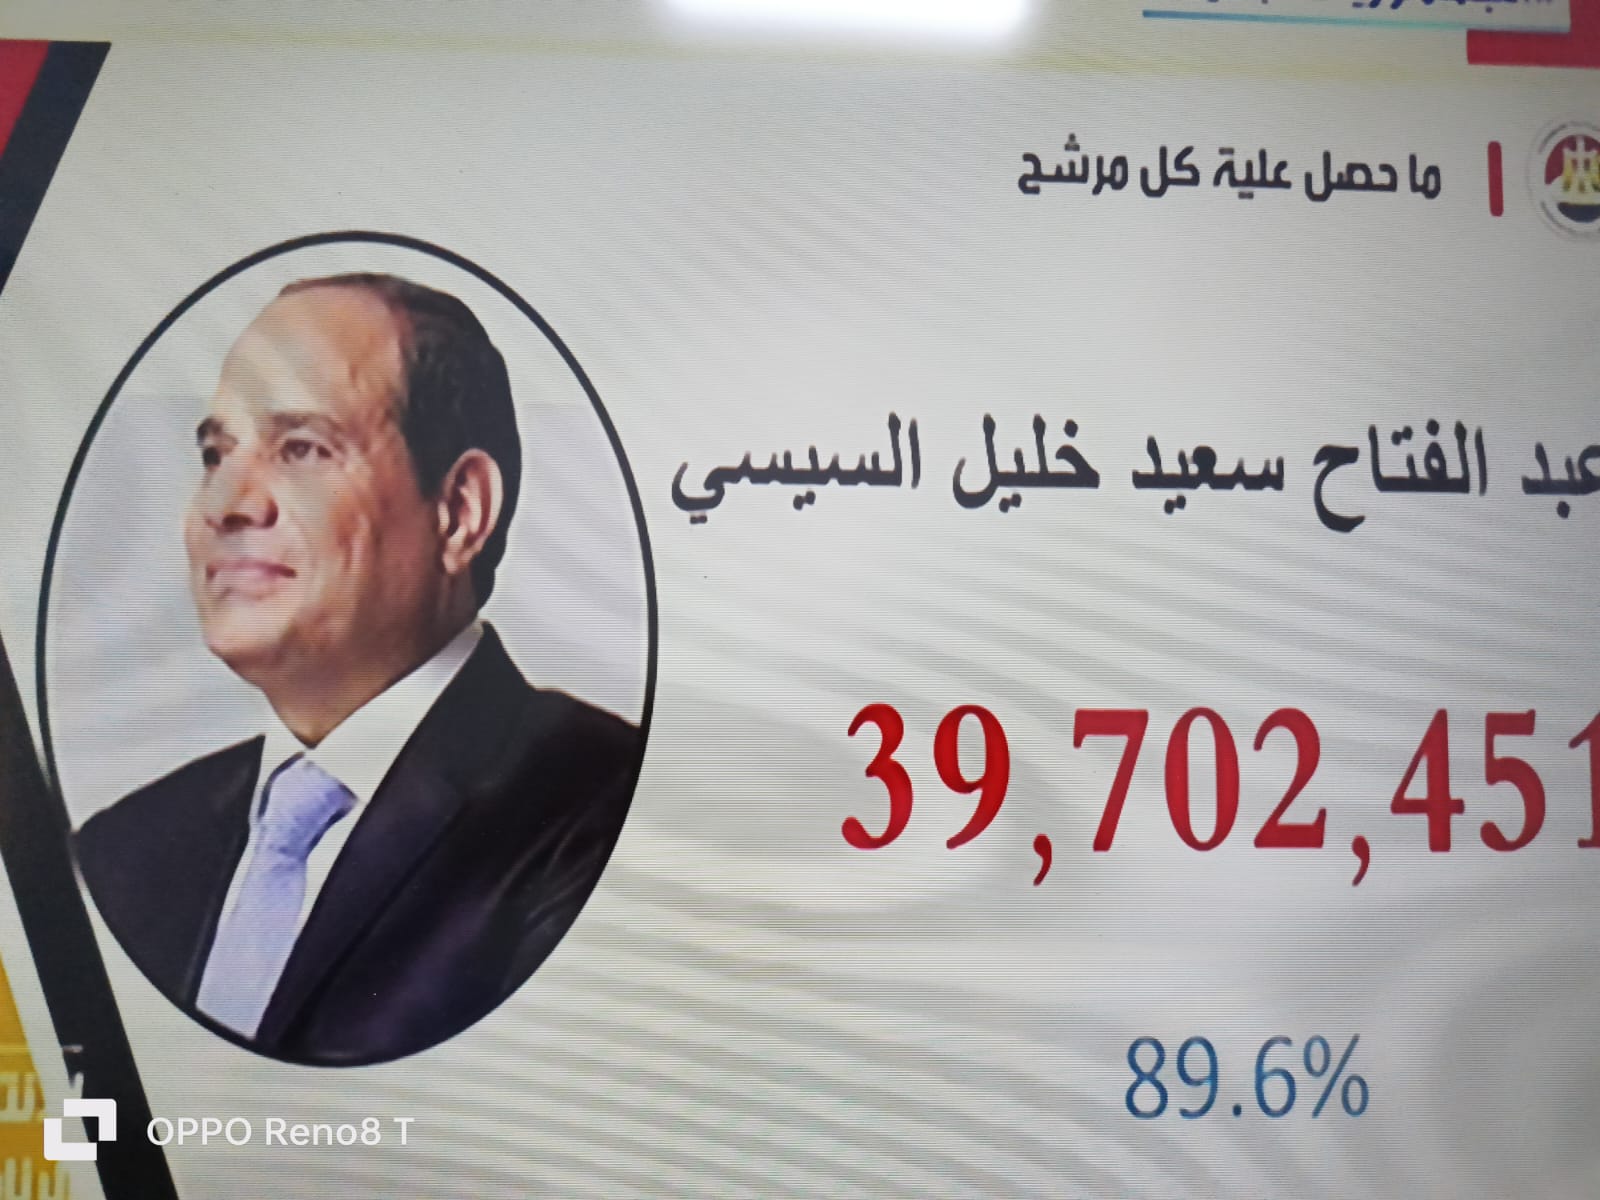 رسميا فوز الرئيس عبد الفتاح السيسي بولاية رئاسية ثالثة